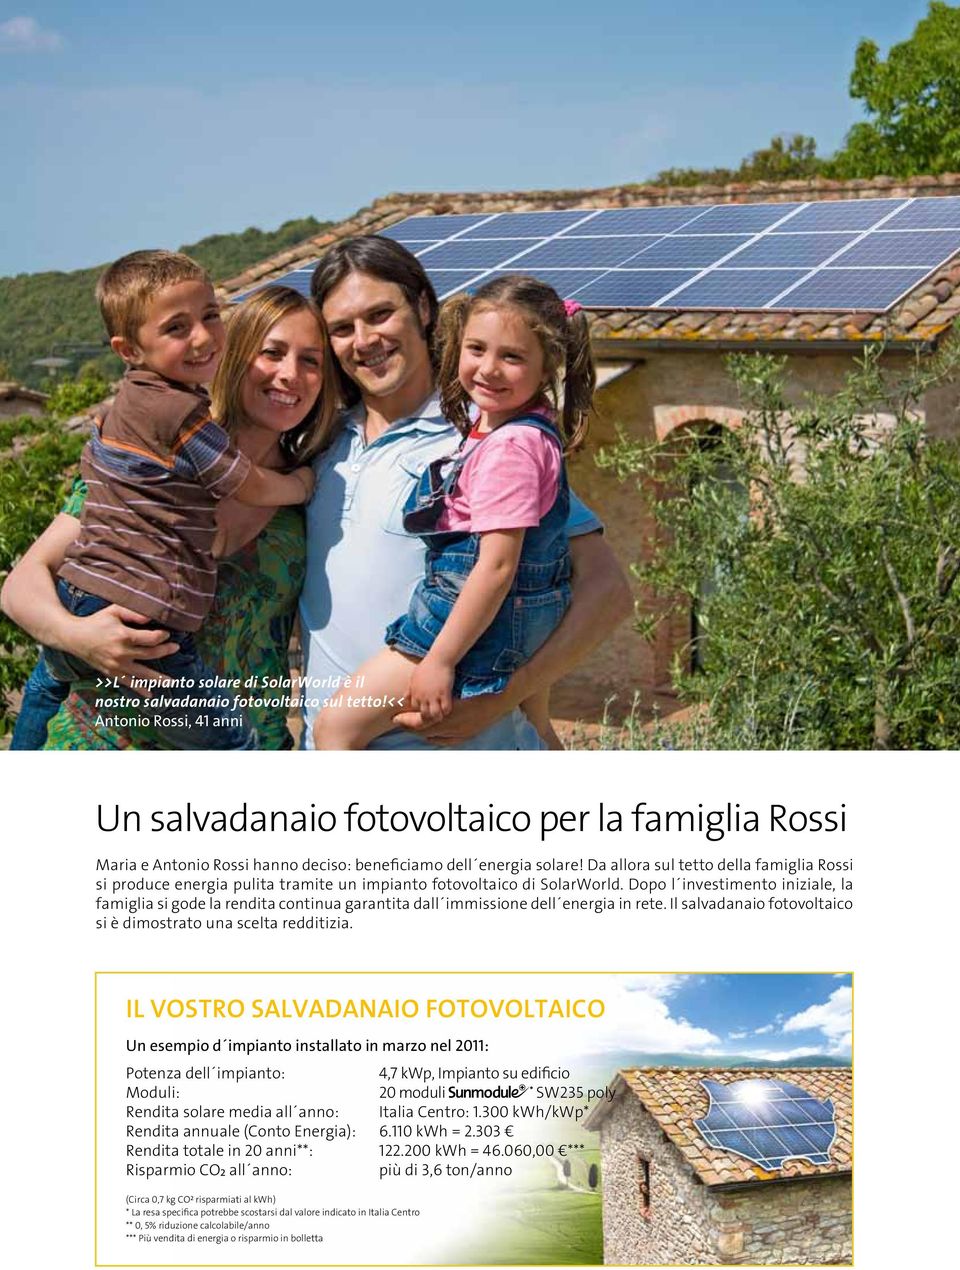 Da allora sul tetto della famiglia Rossi si produce energia pulita tramite un impianto fotovoltaico di SolarWorld.